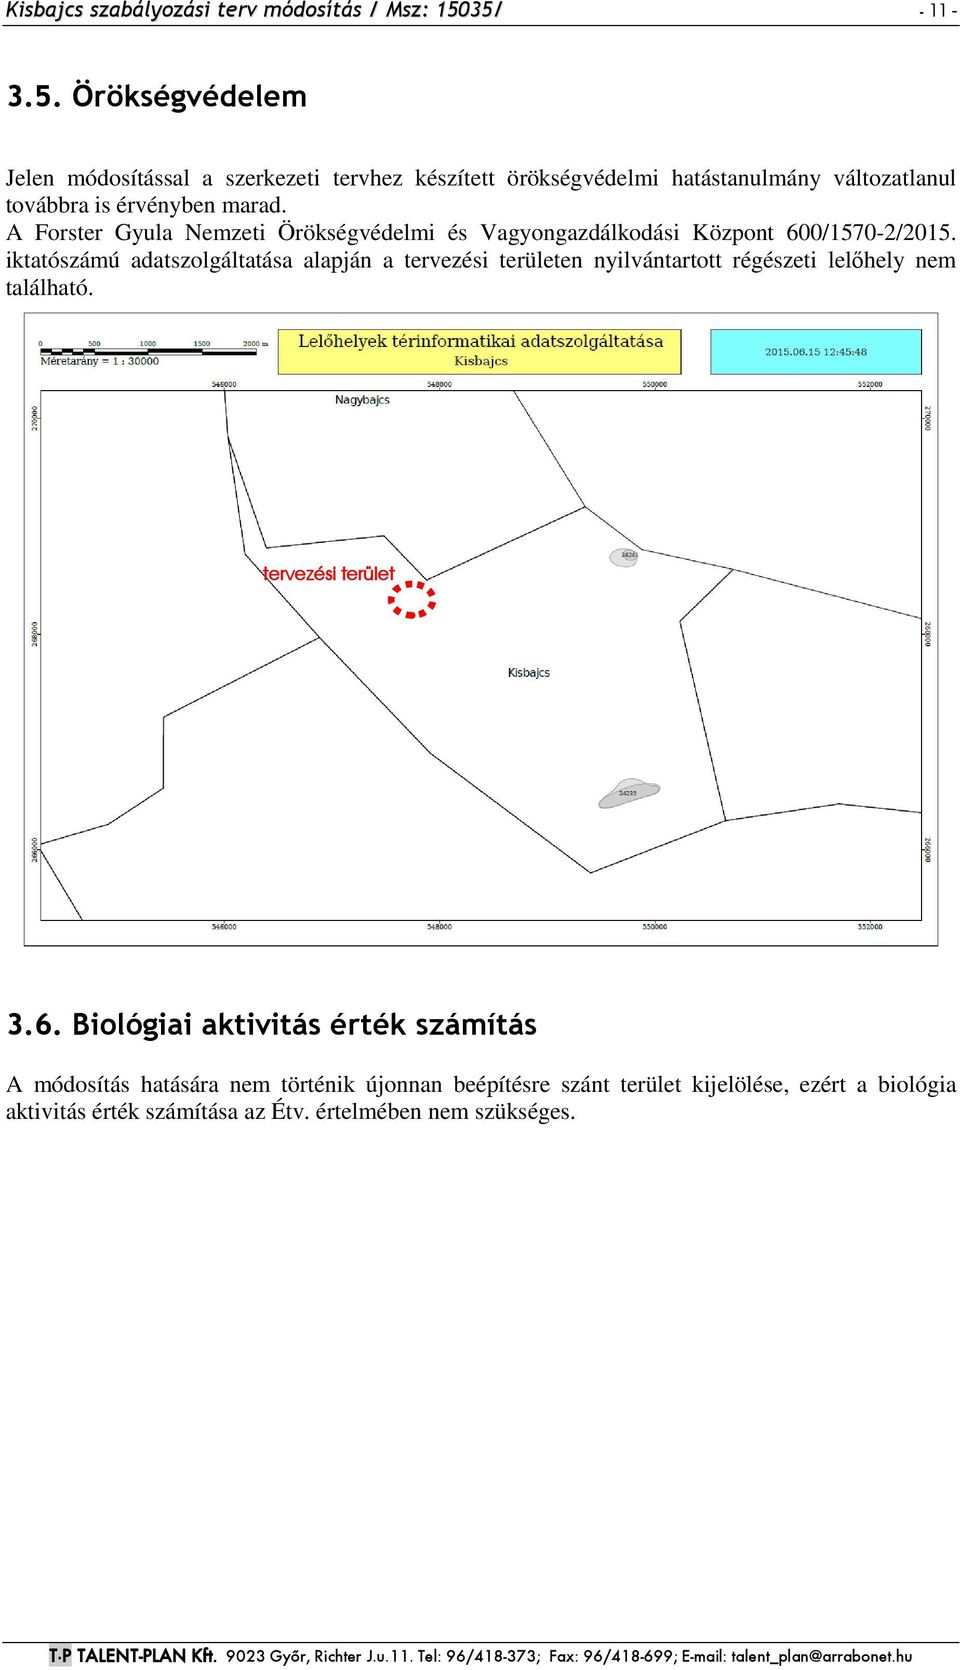 A Forster Gyula Nemzeti Örökségvédelmi és Vagyongazdálkodási Központ 600/1570-2/2015.